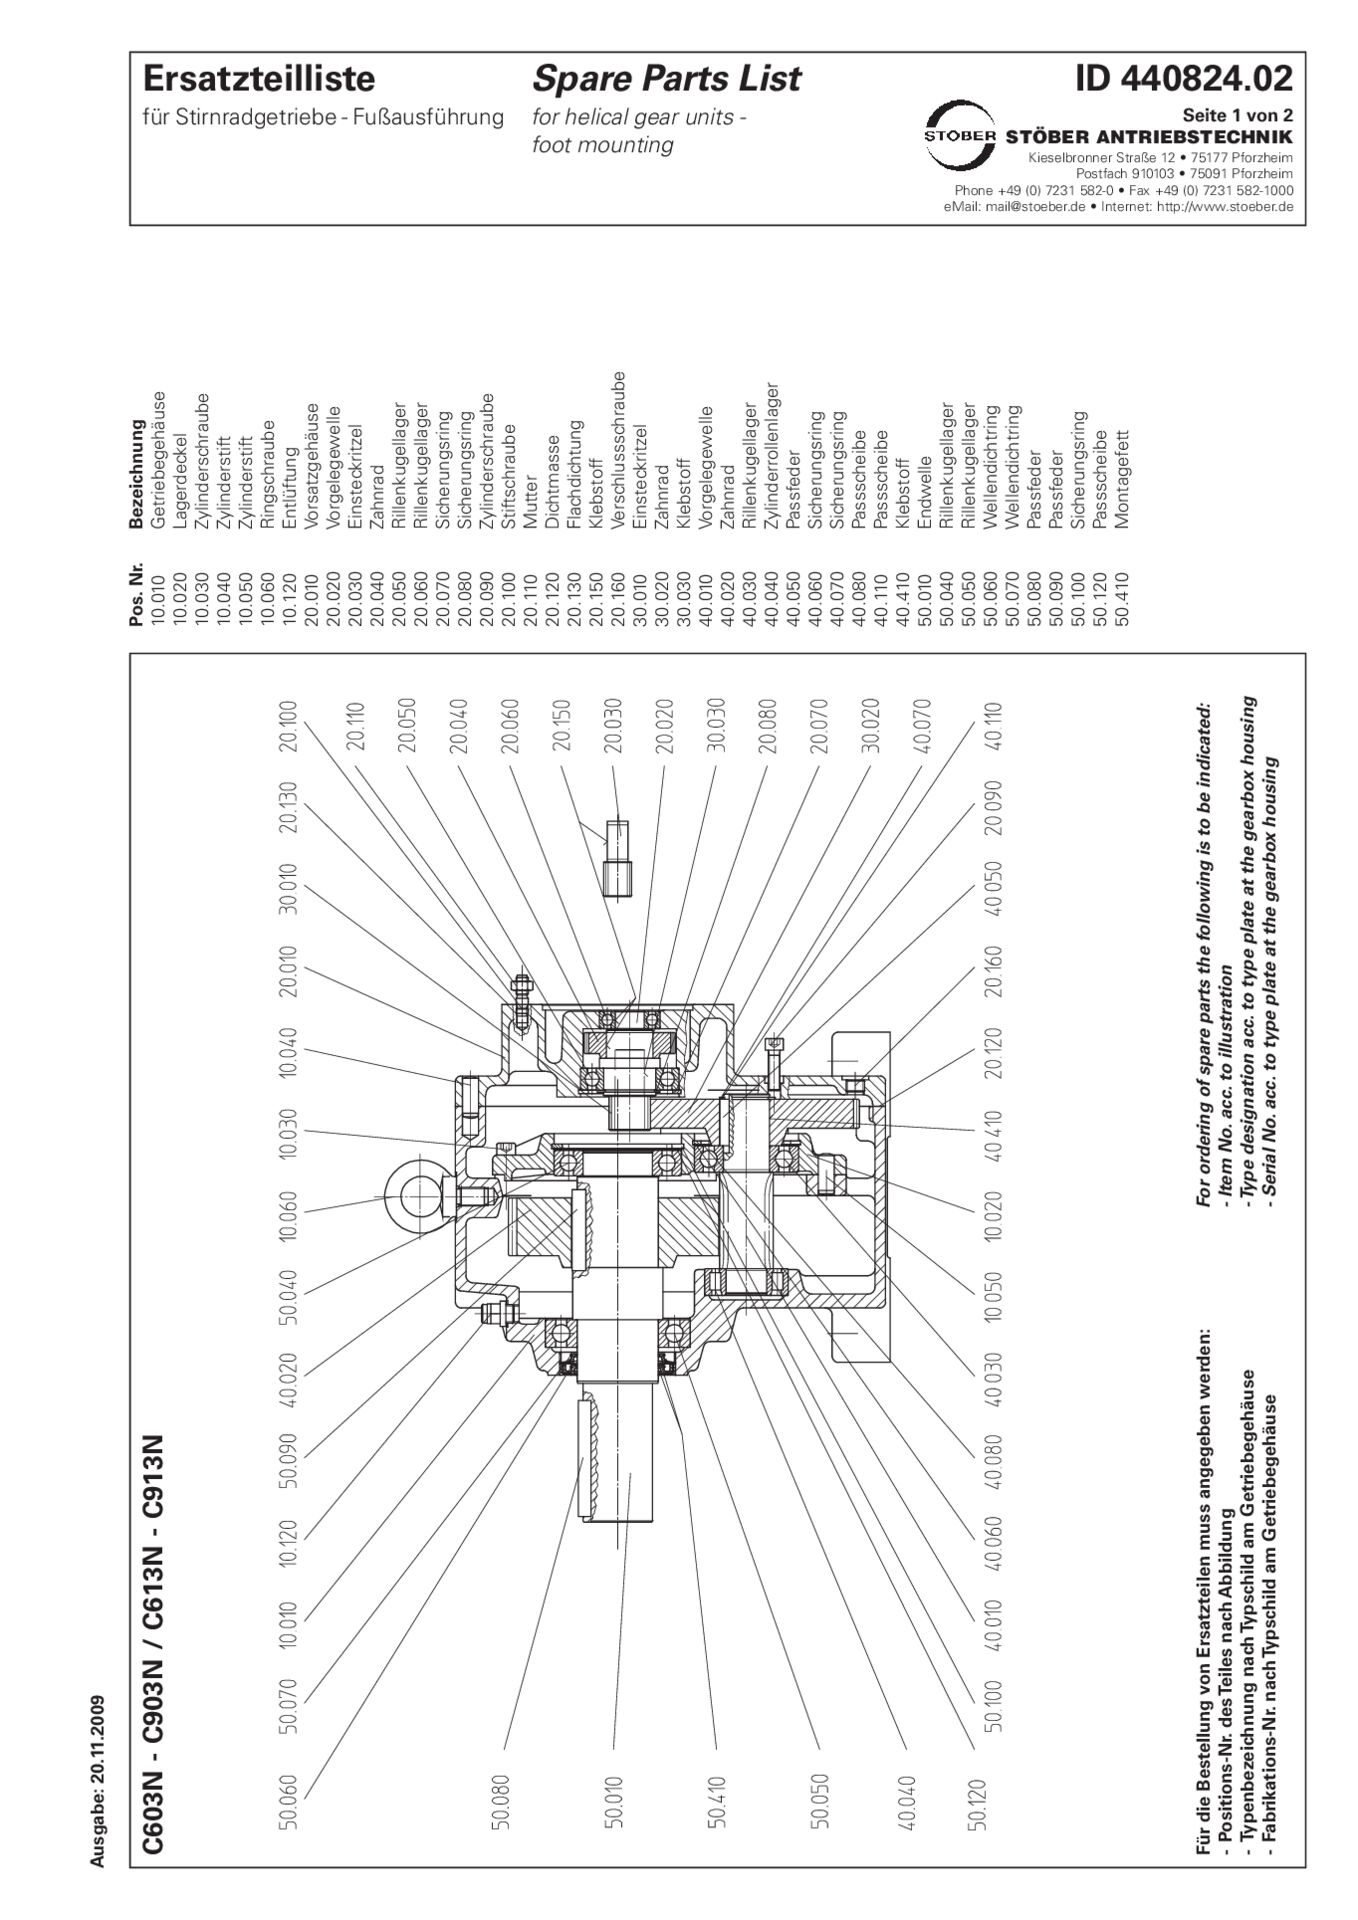 Replacement parts list helical gear units C603 C613 C703 C713 C803 C813 C903 C913 N